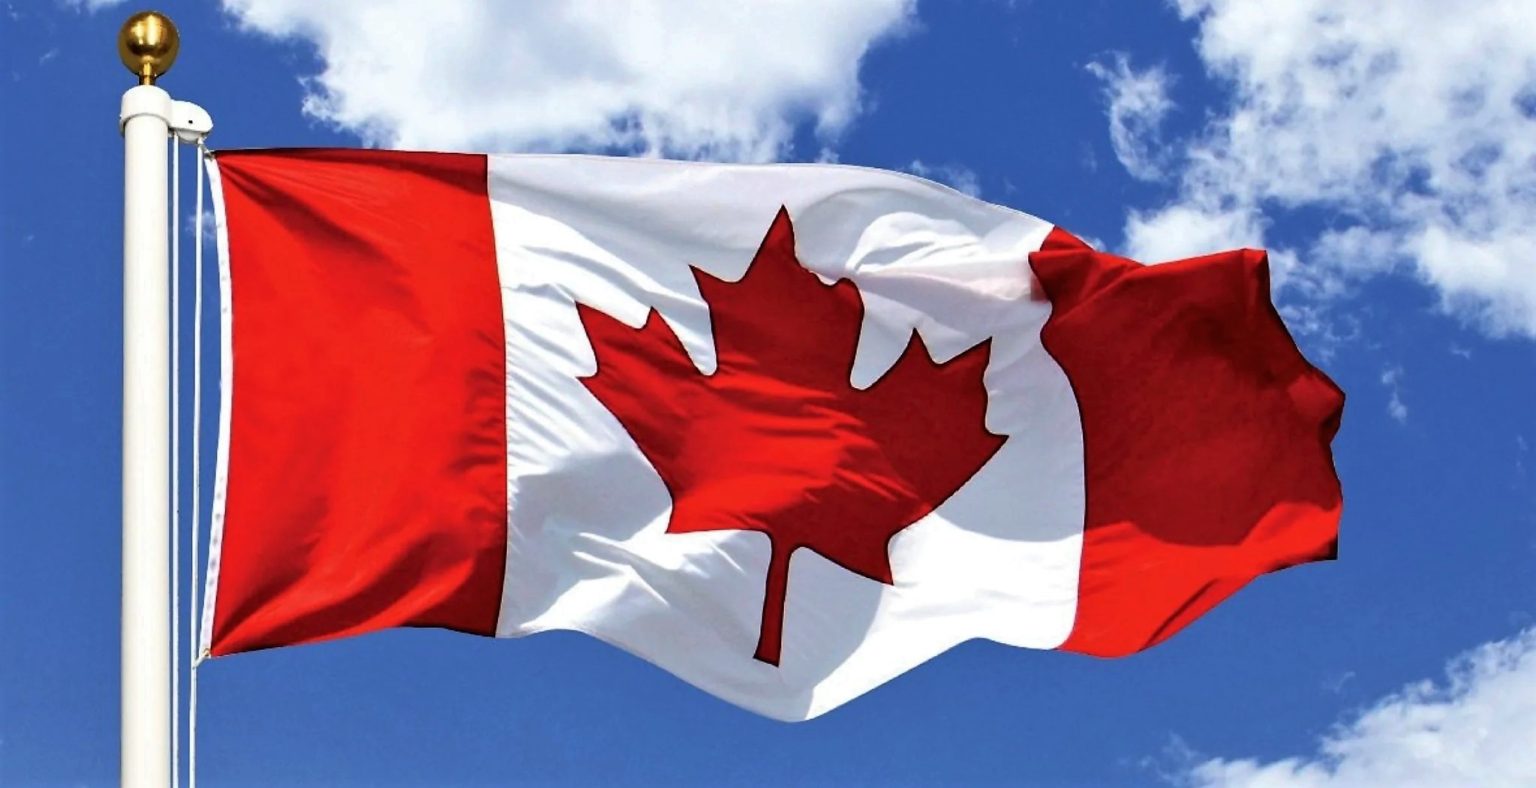 Niagara-on-the-Lake finally gets Canadian flag at waterfront park | insauga